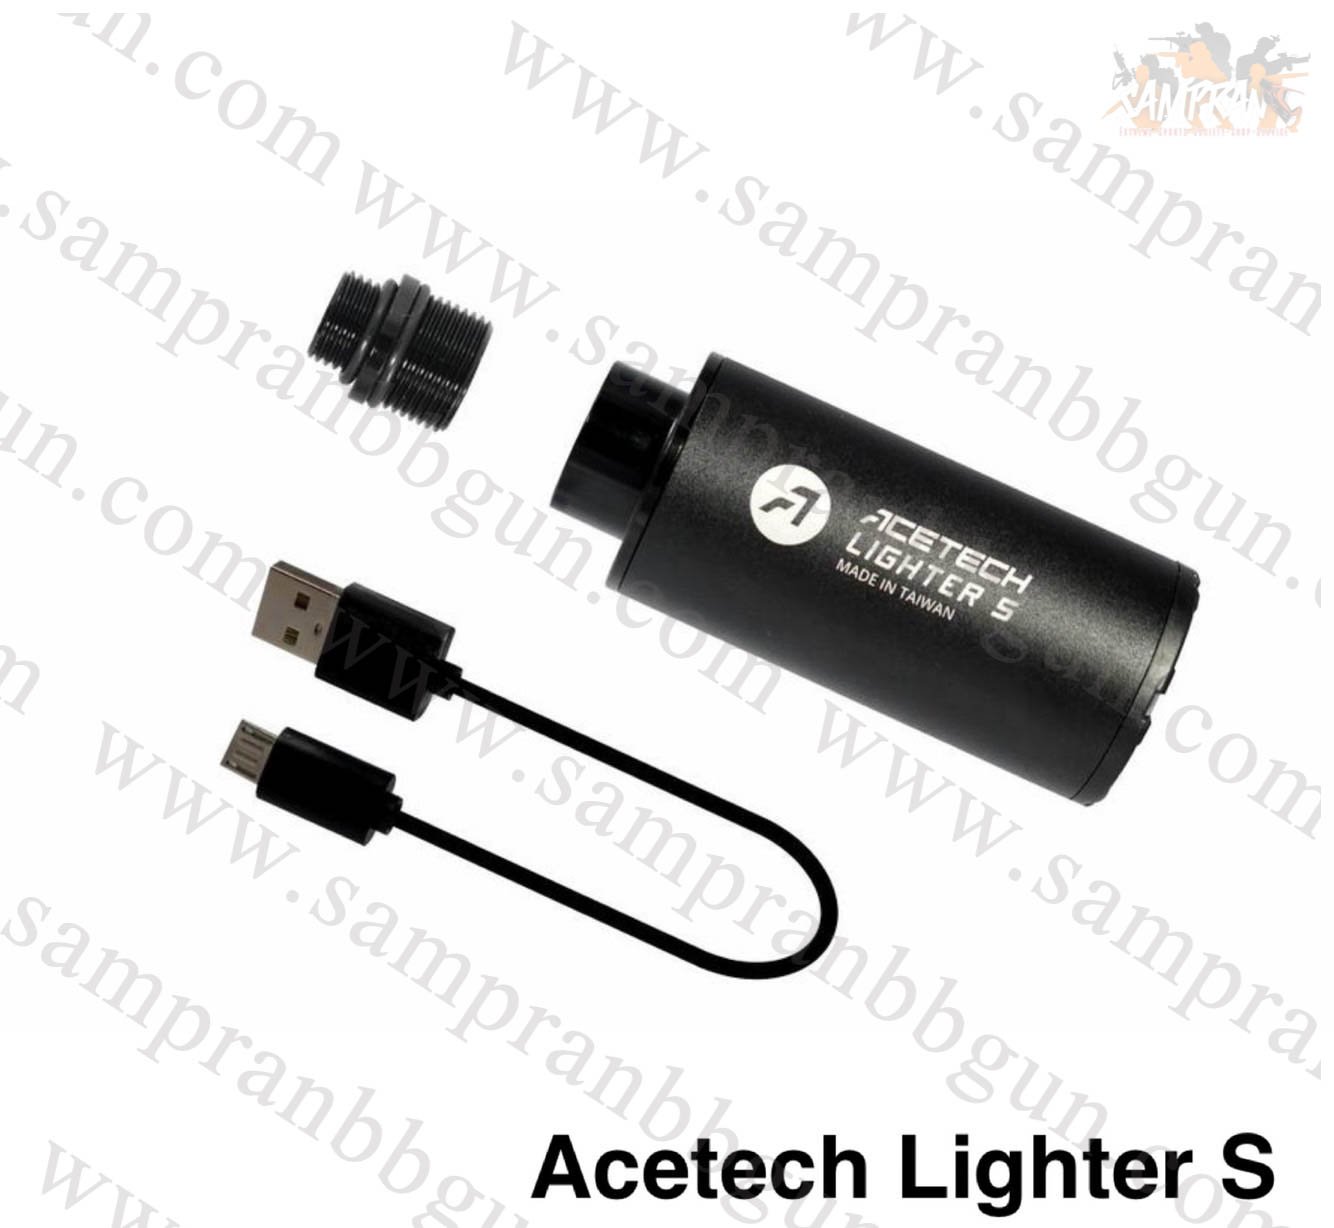 ACETECH Lighter S Tracer Unit